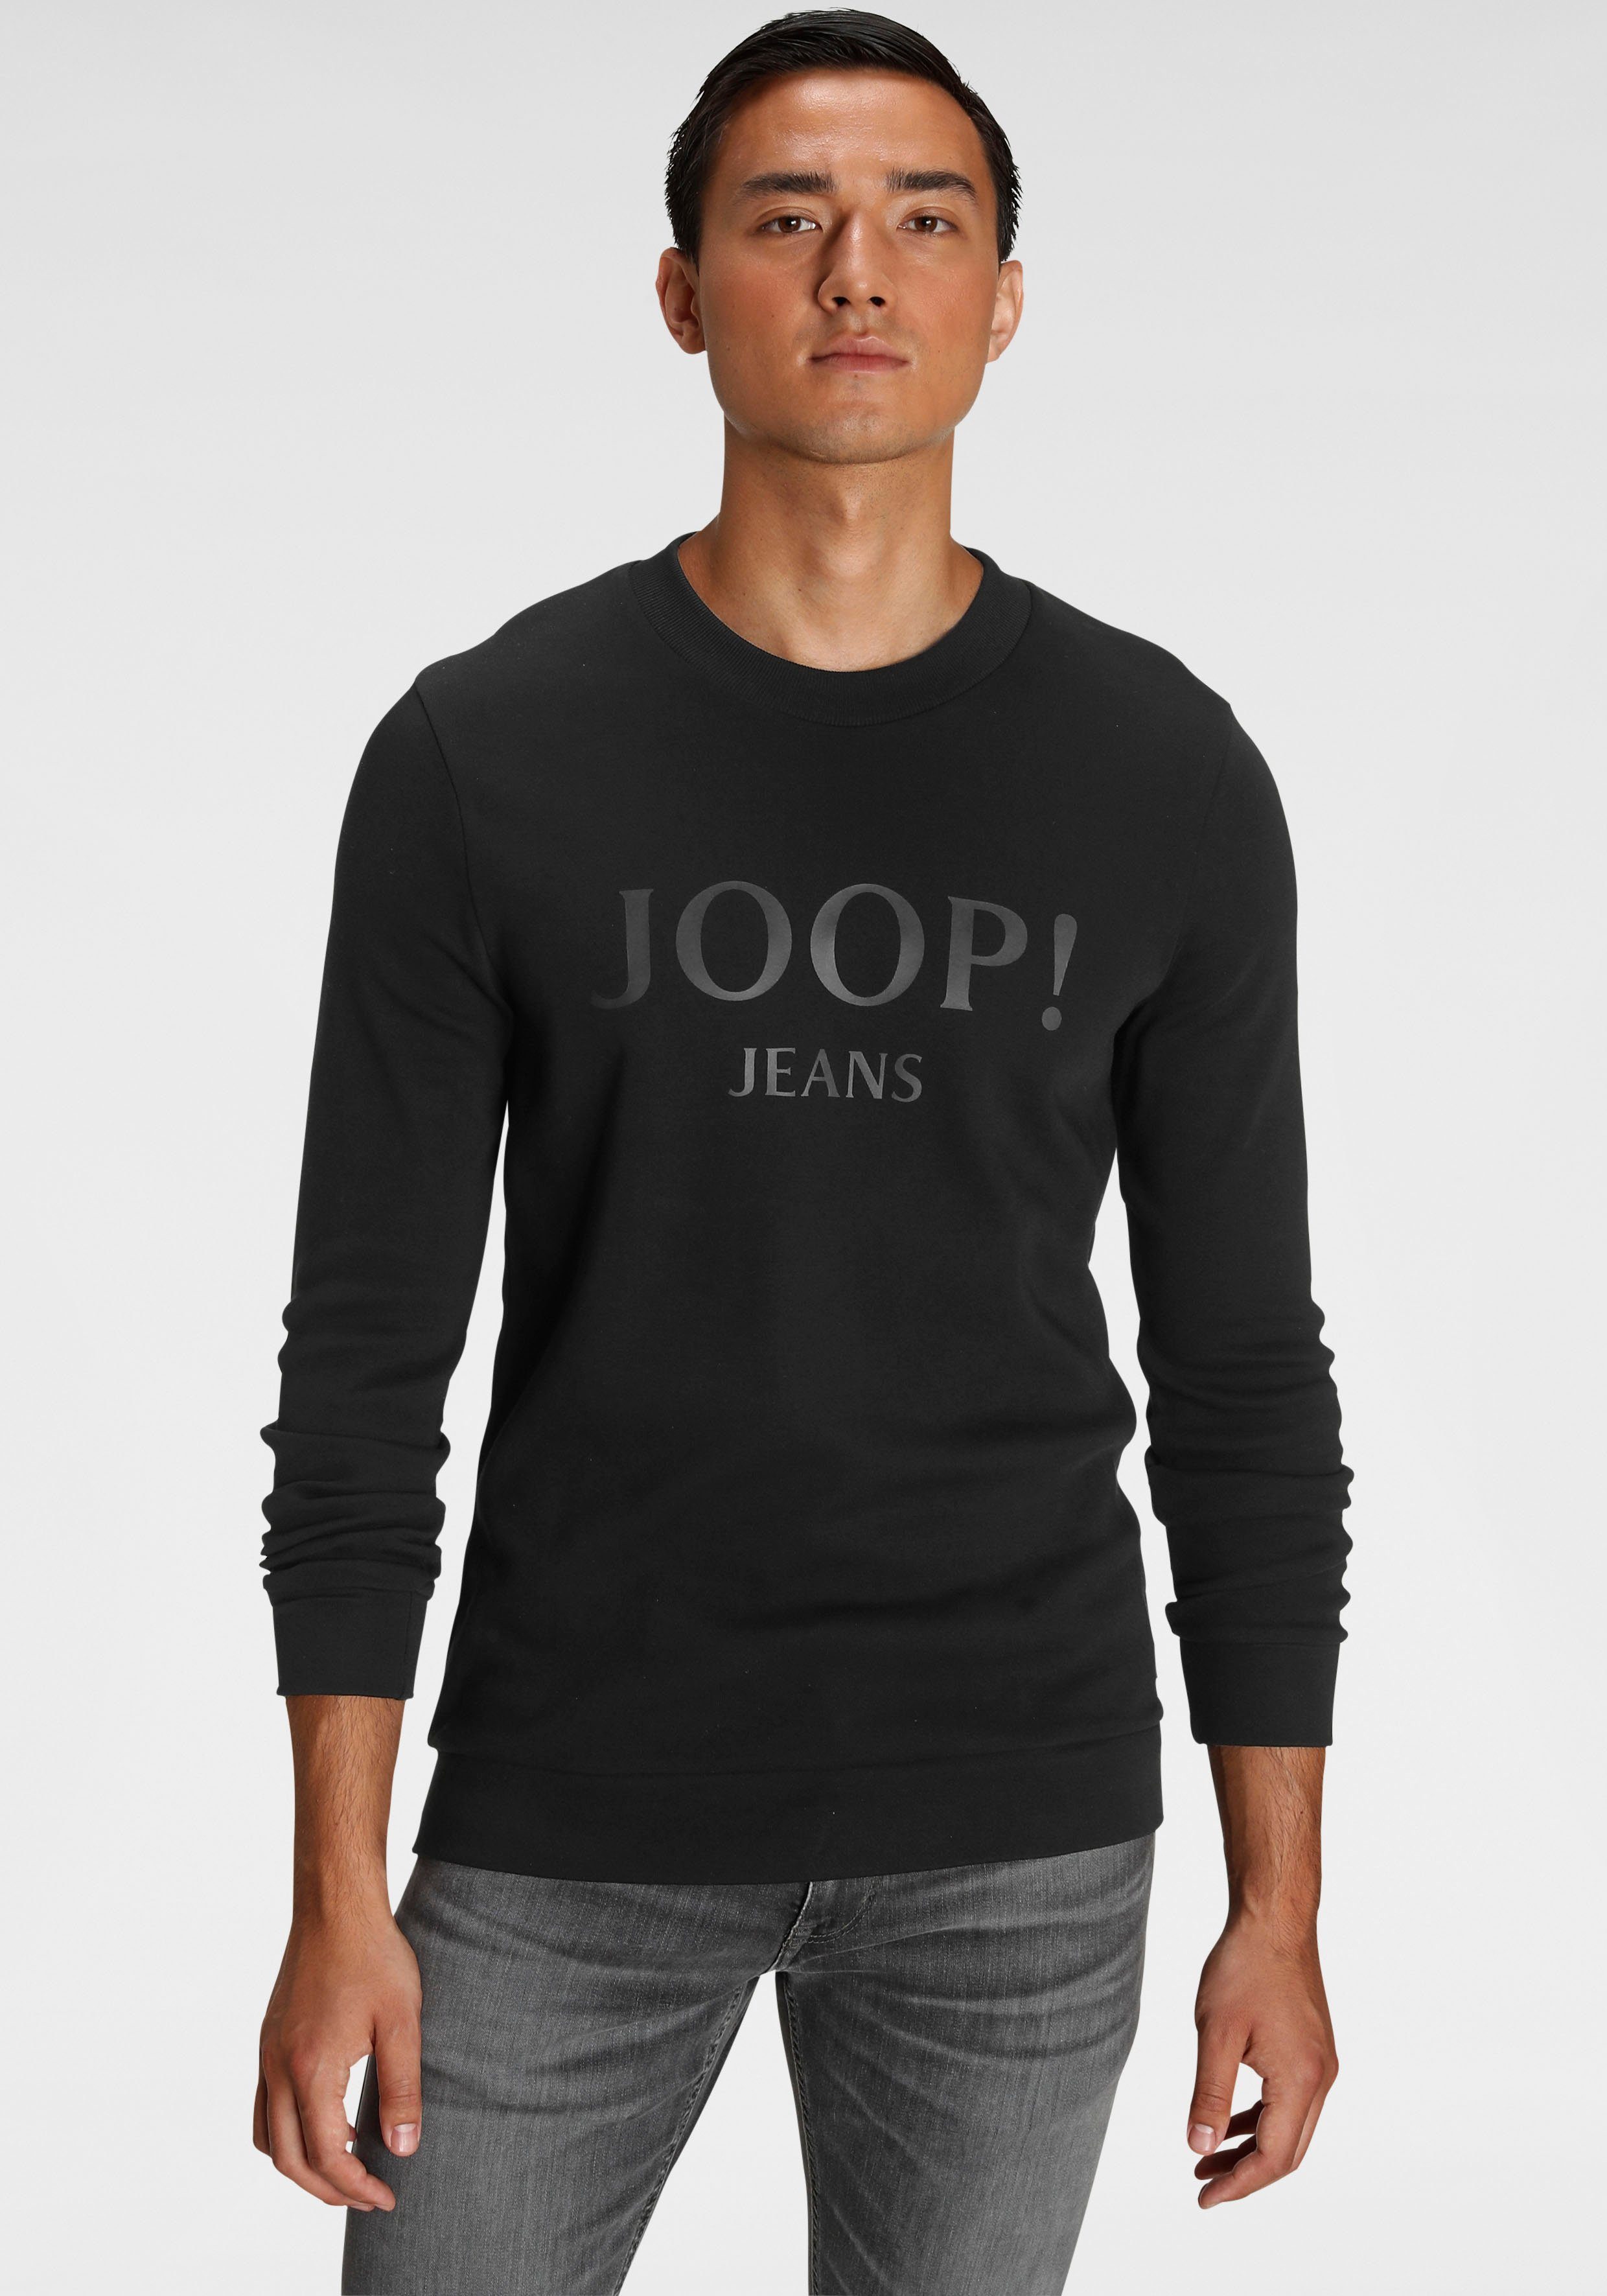 Joop Jeans Sweatshirt JJJ-25Alfred